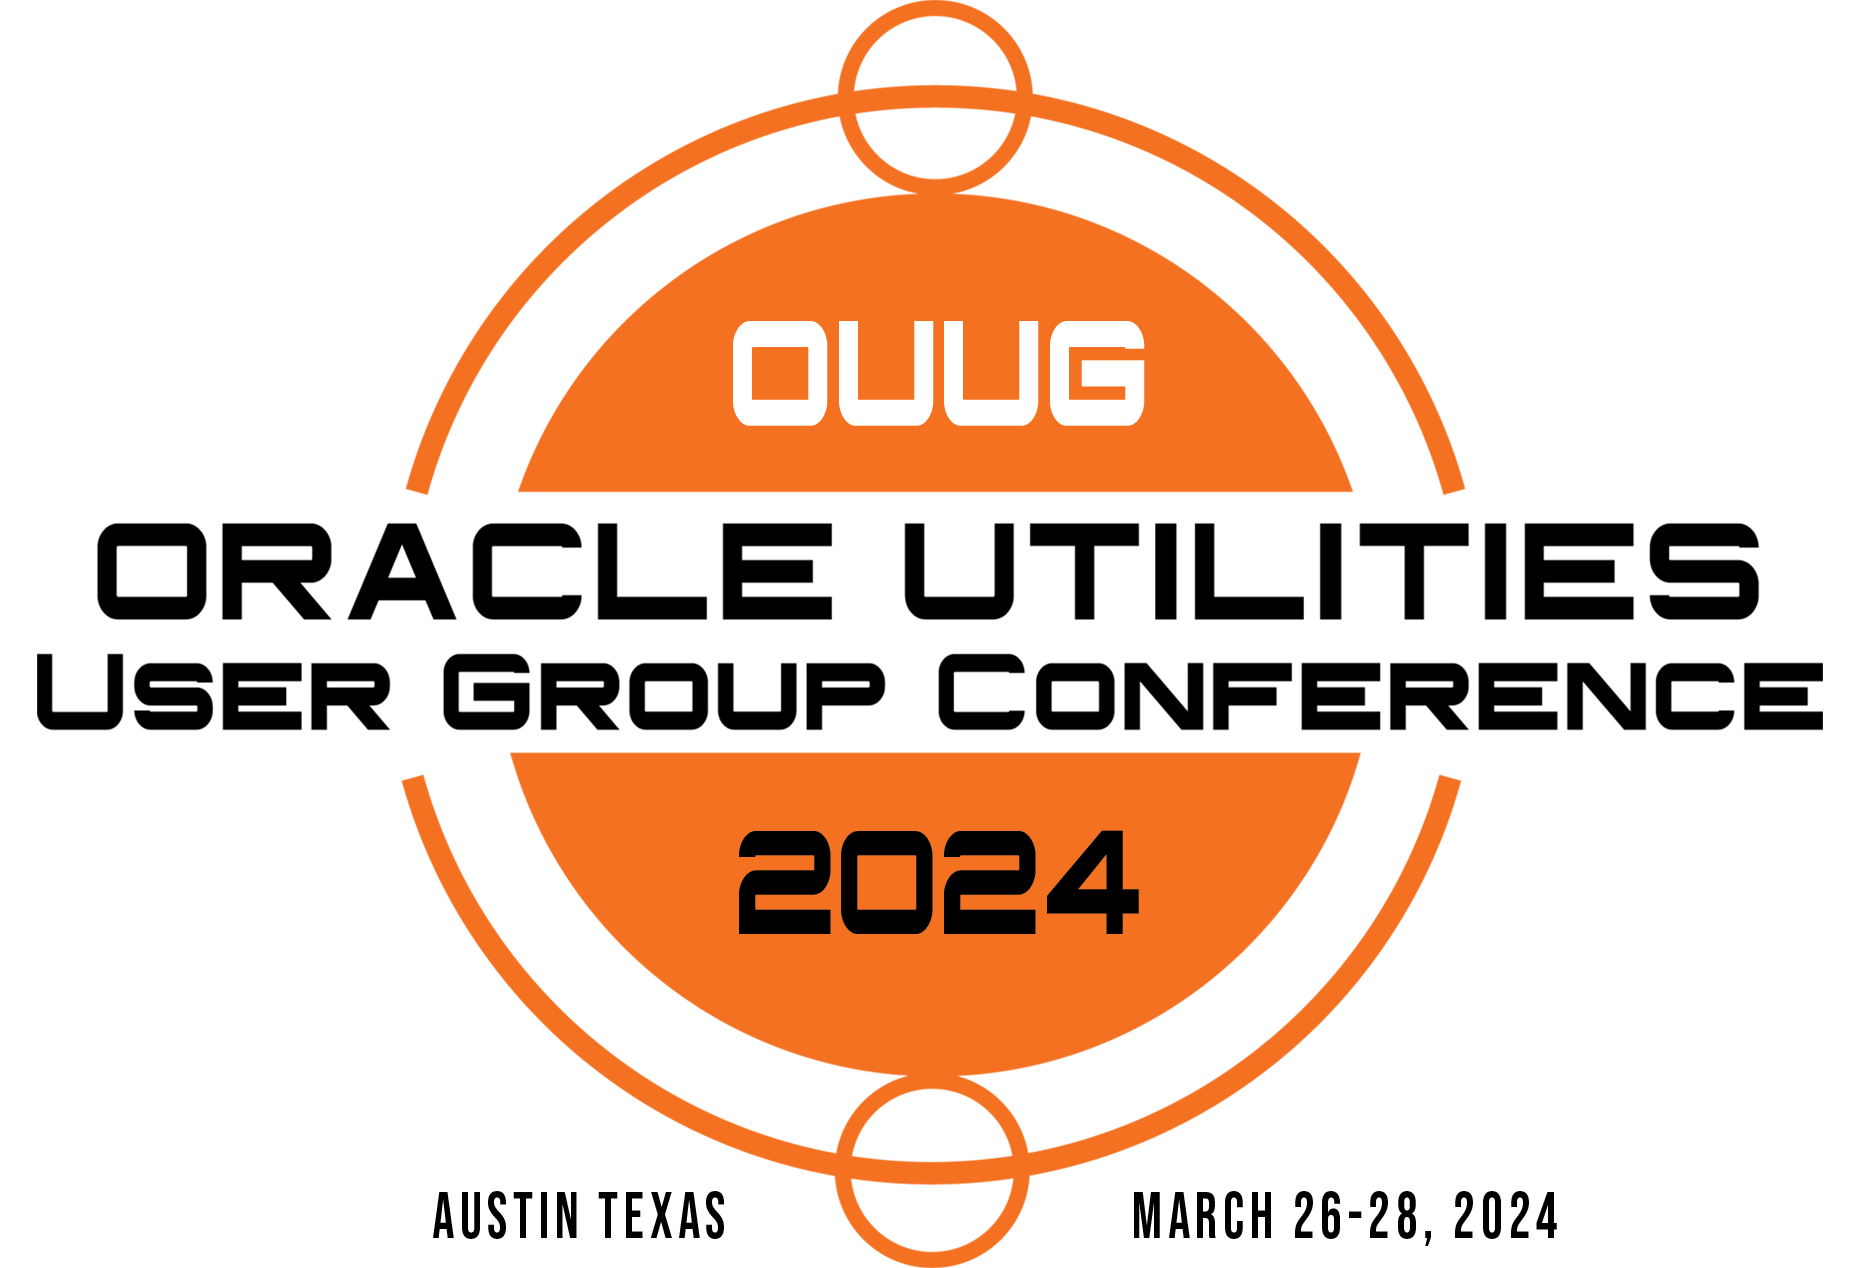 OUUG 2024